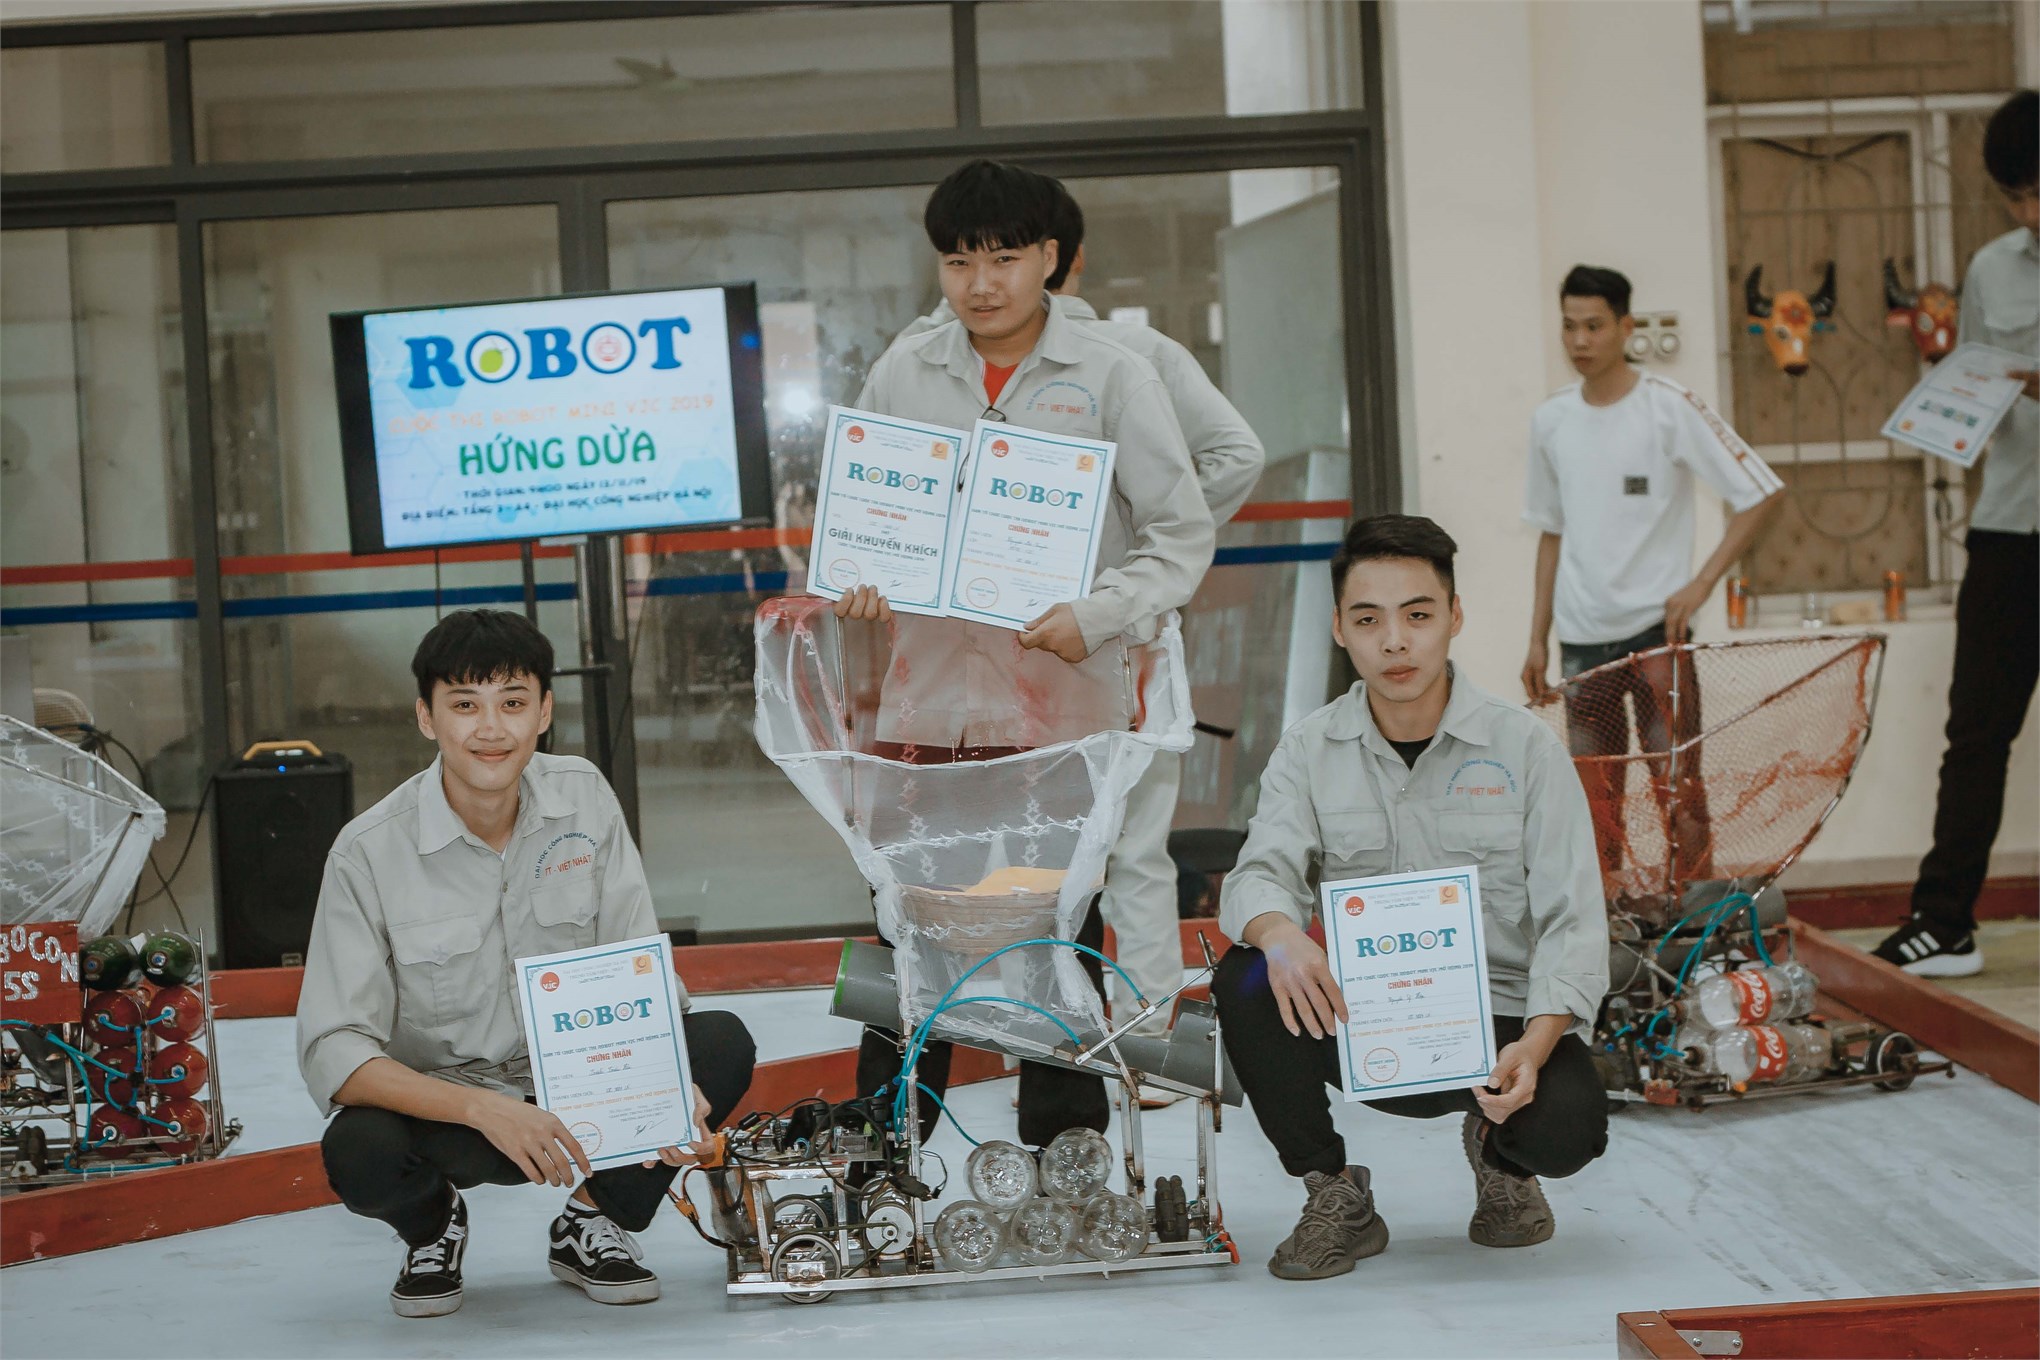 Liên chi đoàn Trung tâm Việt Nhật khởi động mùa robocon với cuộc thi “Robot mini VJC 2019”